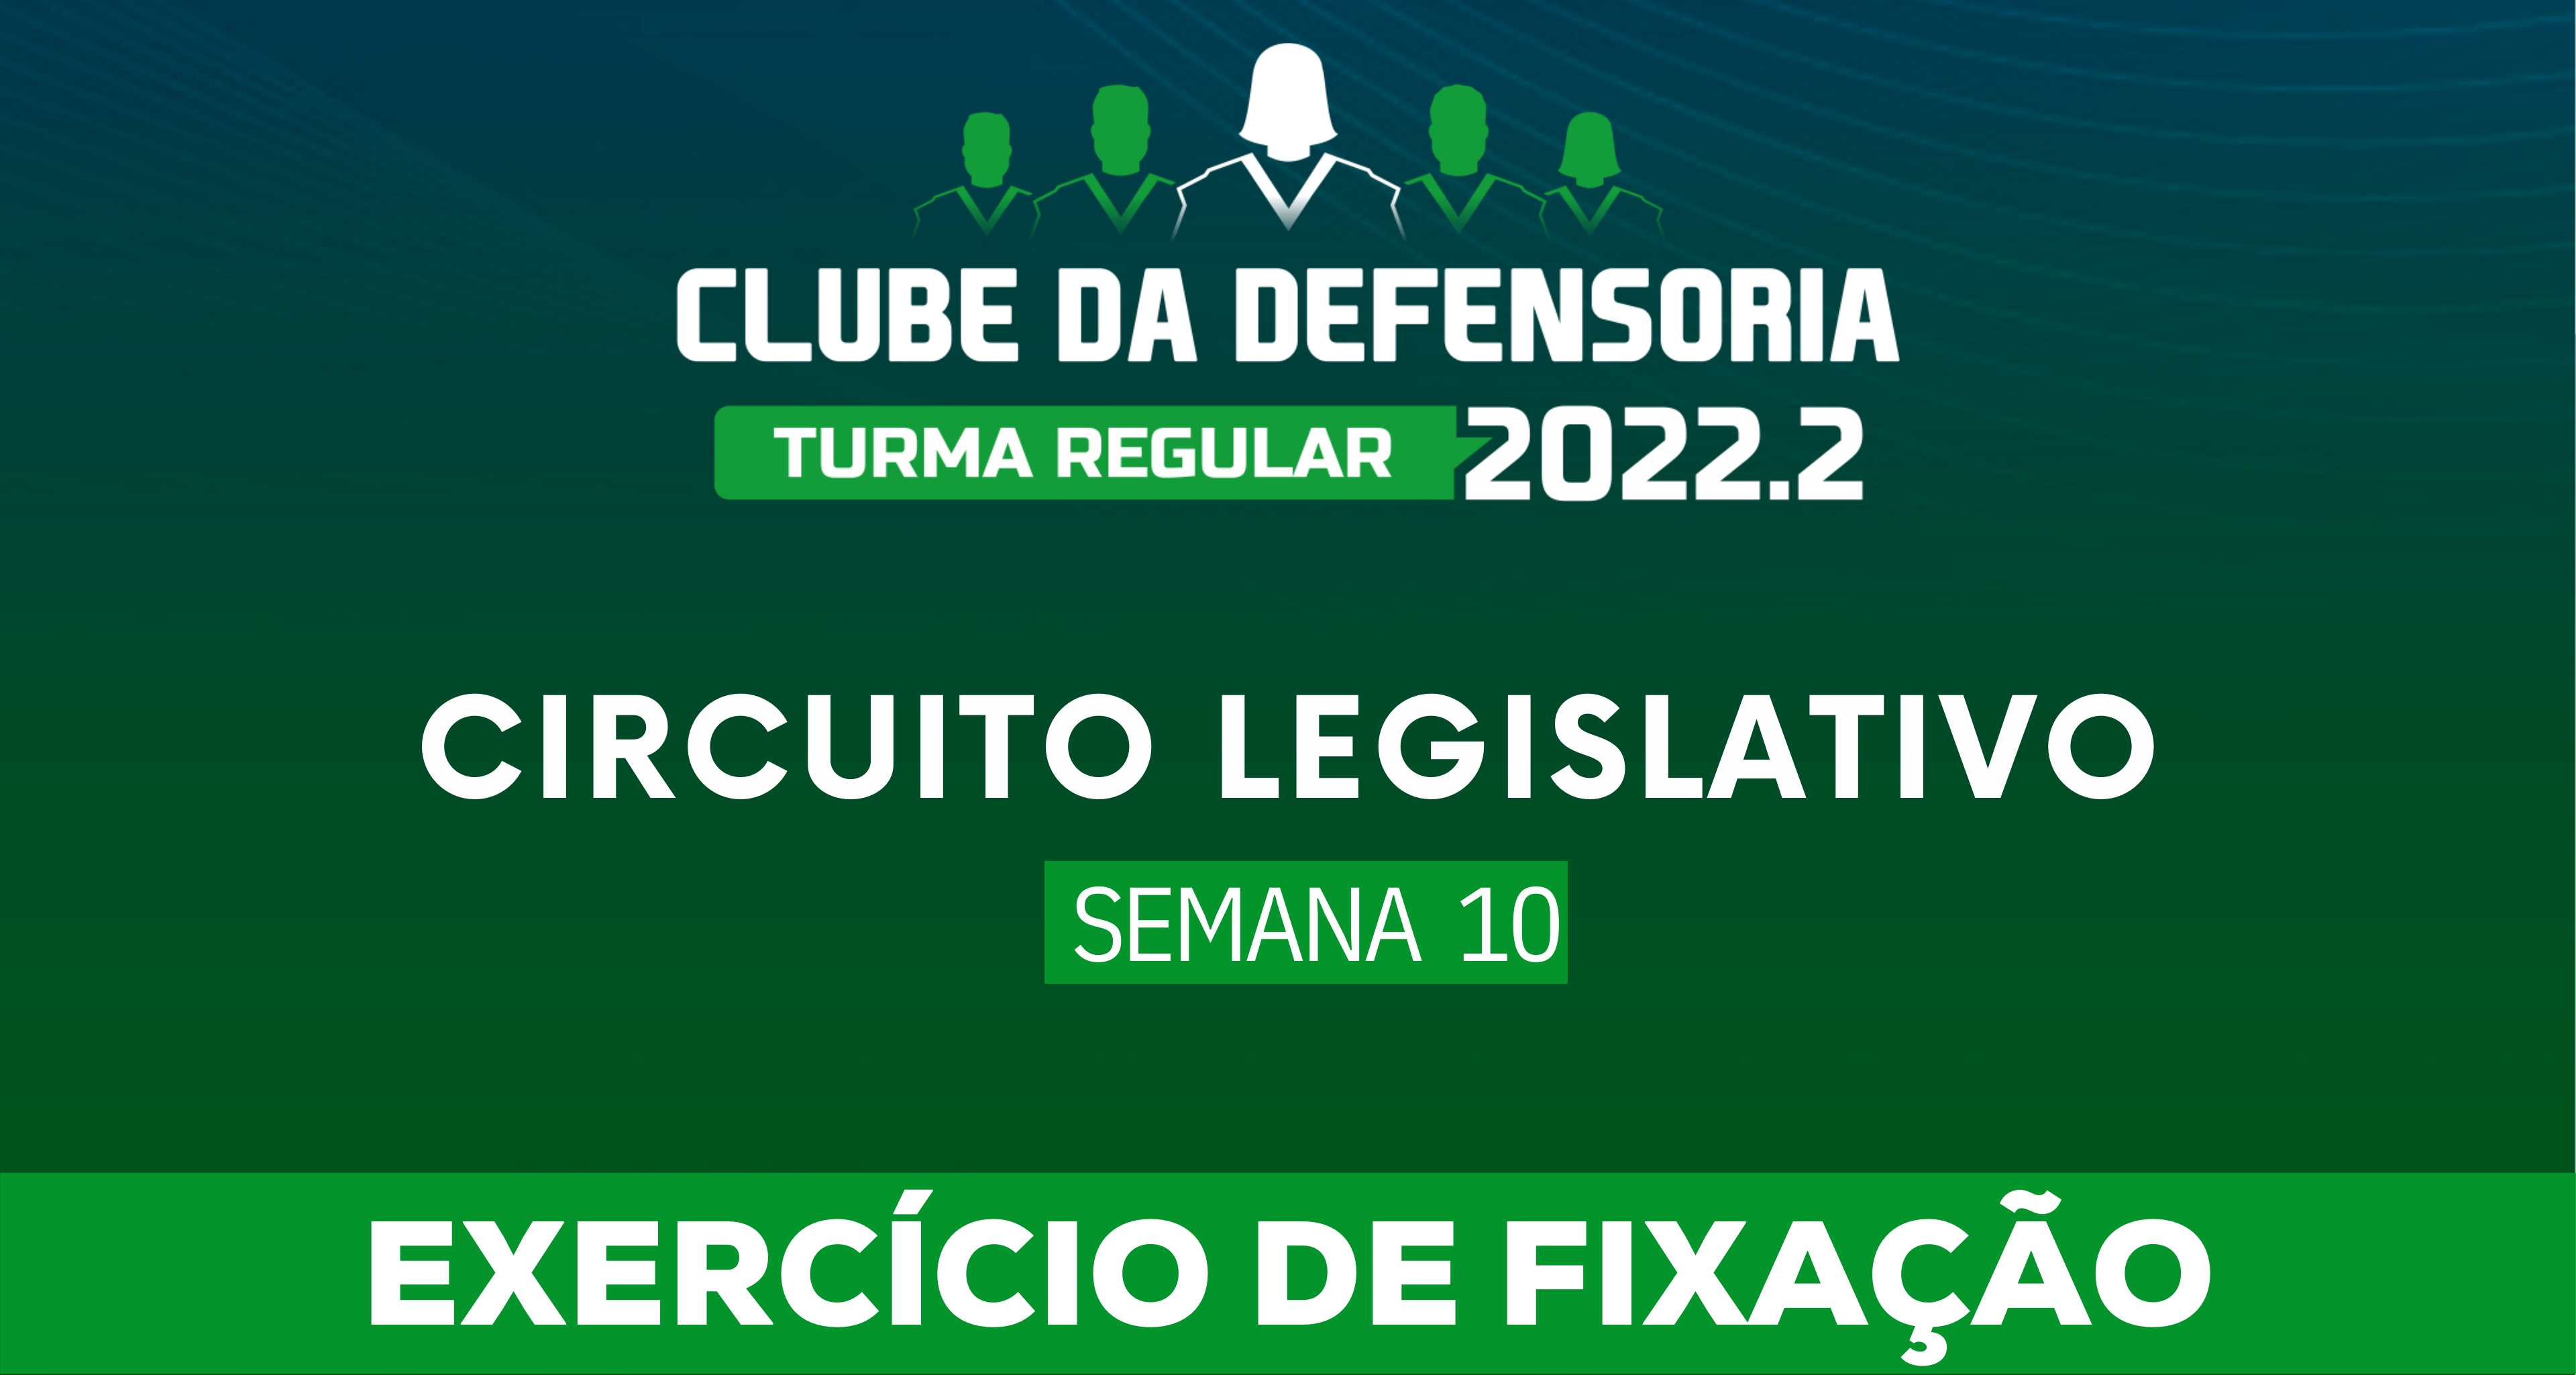 Circuito Legislativo 2022.2 (Clube da Defensoria - Semana 10)